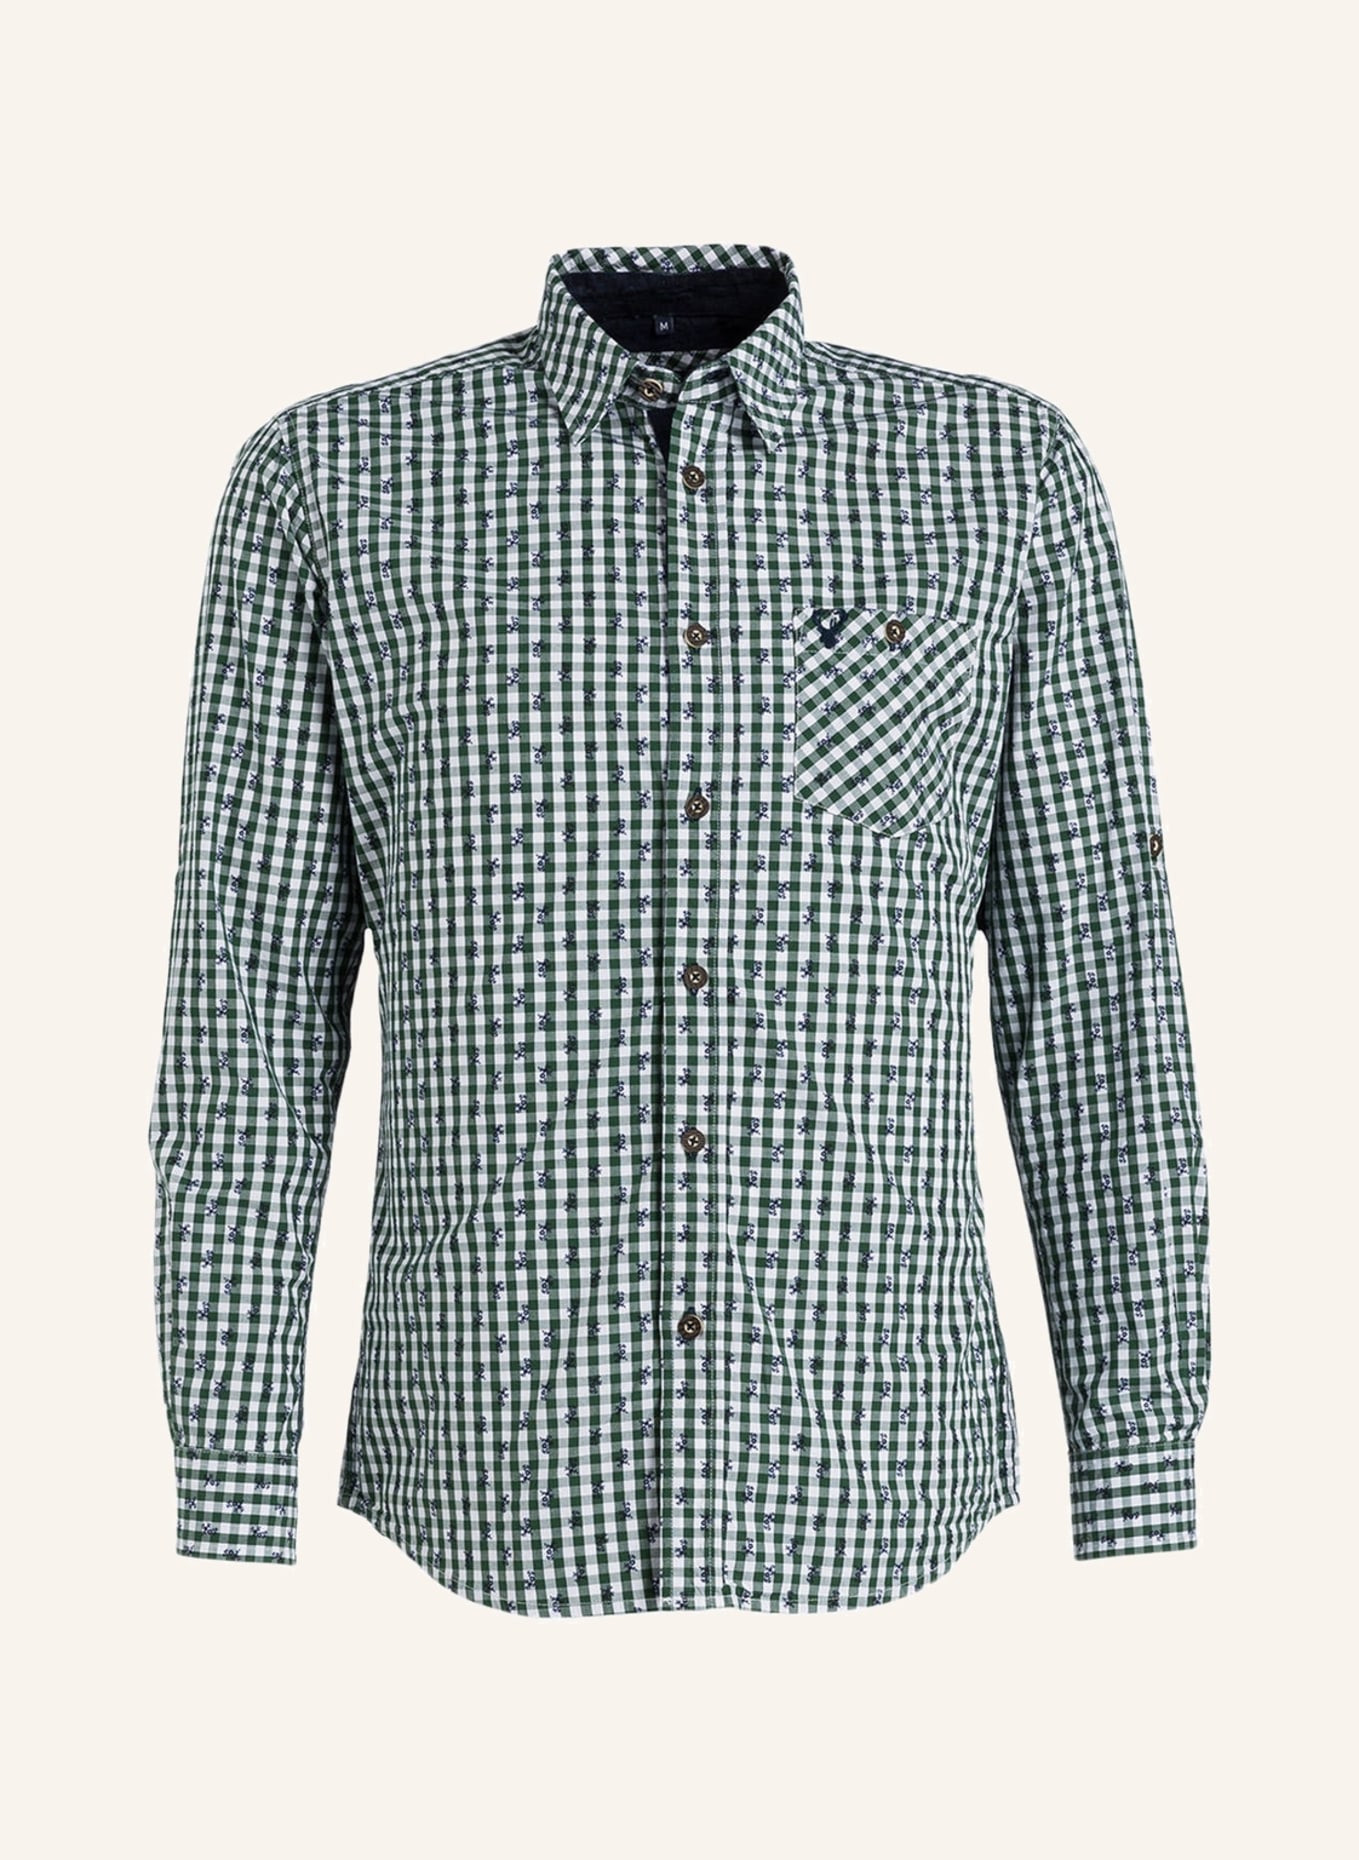 KRÜGER Trachtenhemd , Farbe: 105 weiß-grün (Bild 1)